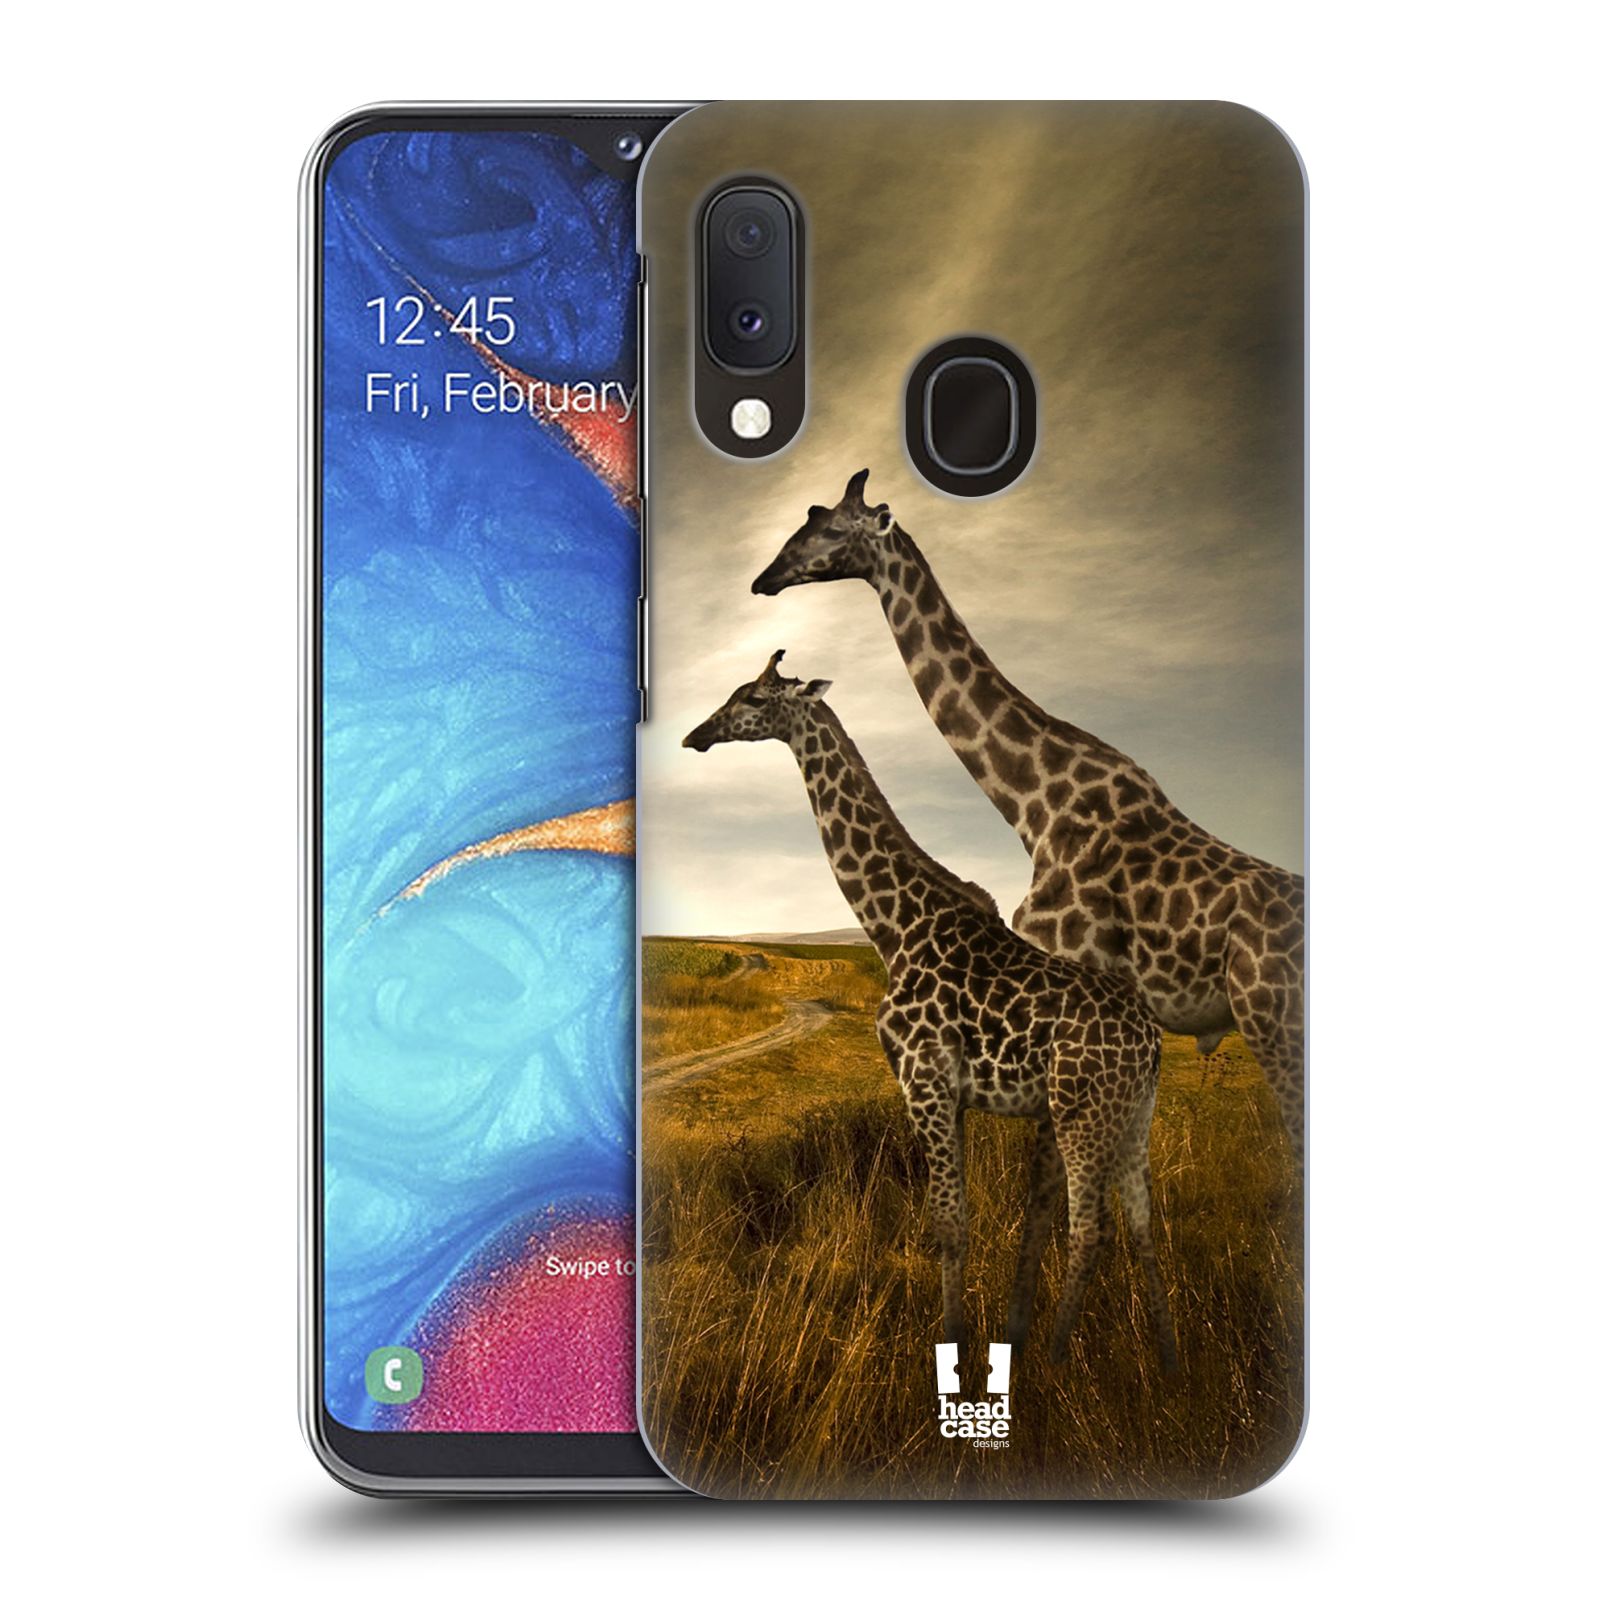 Zadní obal pro mobil Samsung Galaxy A20E - HEAD CASE - Svět zvířat žirafy